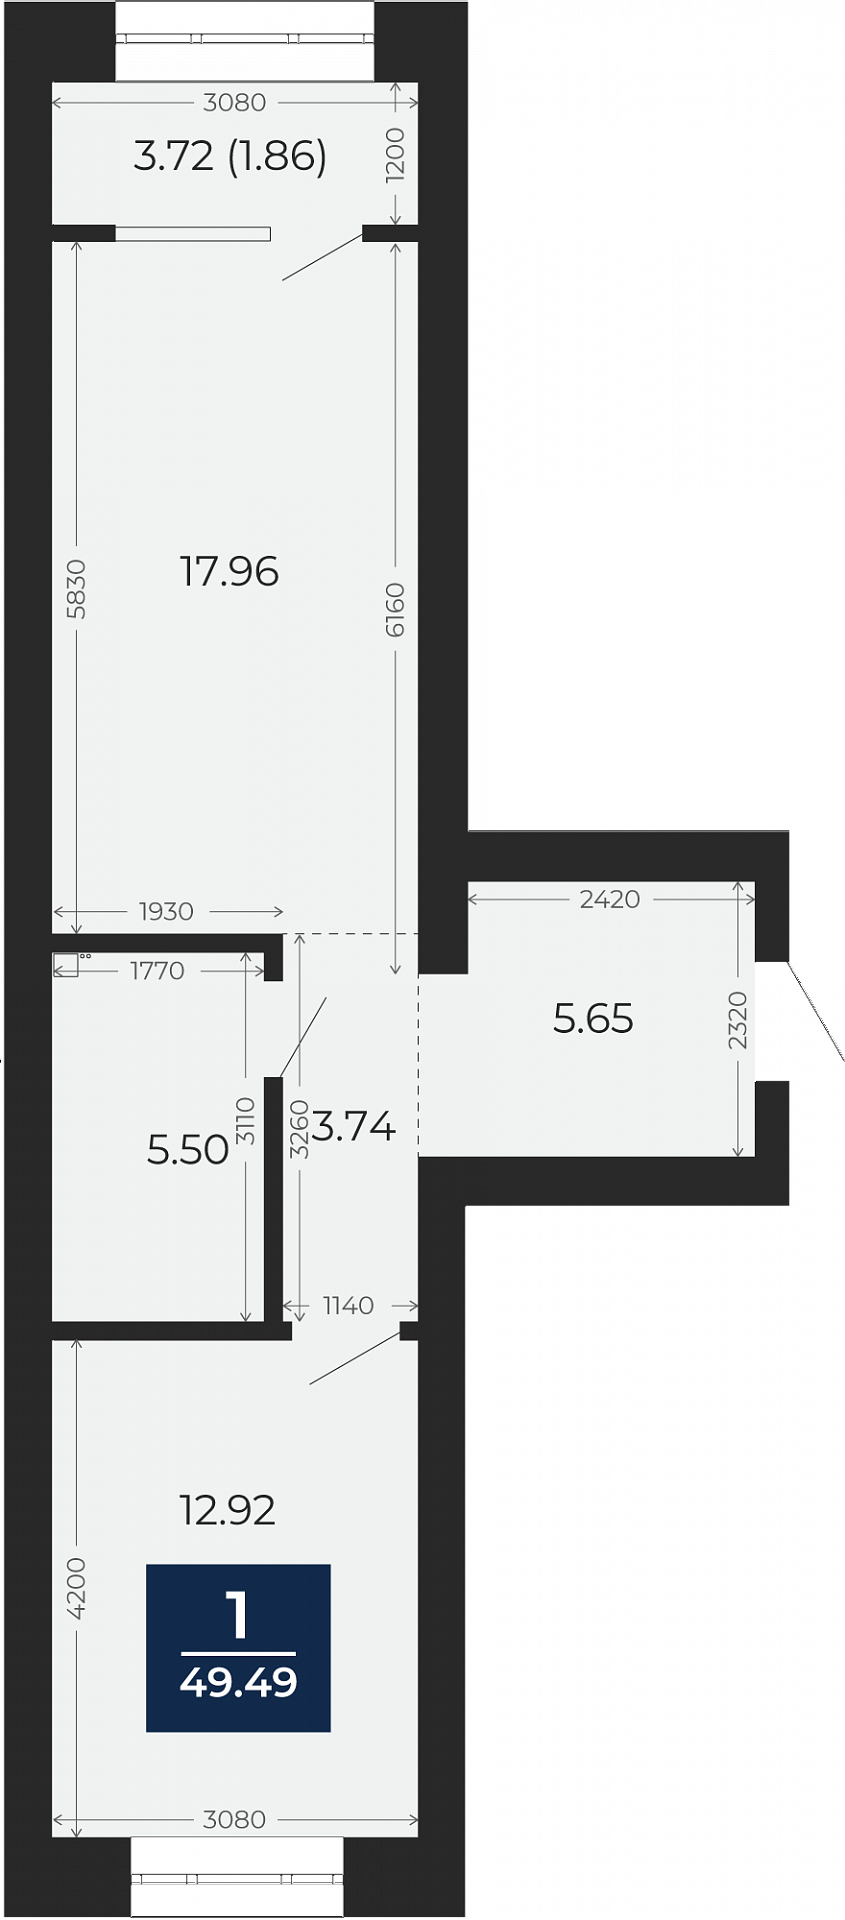 Квартира № 2, 1-комнатная, 49.49 кв. м, 2 этаж